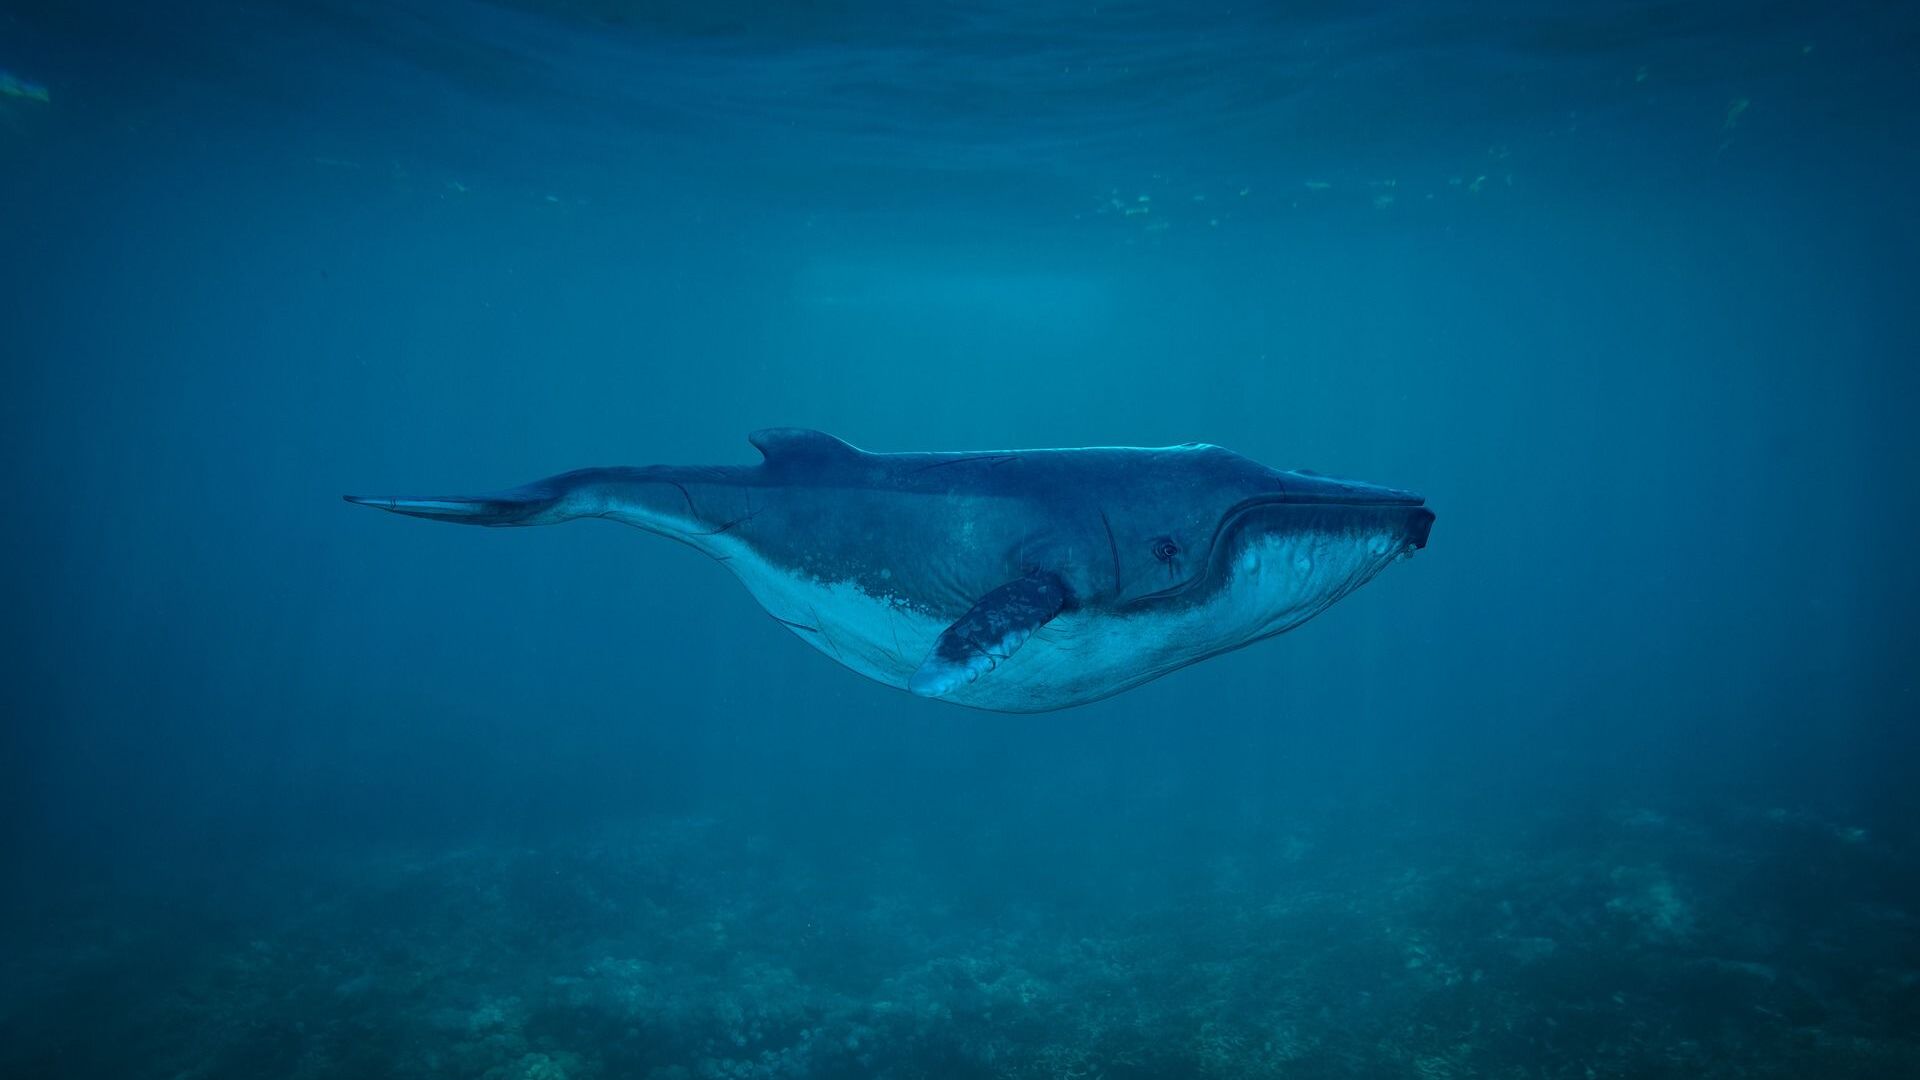 Th триста тонн живого веса : Древний кит может быть самым тяжелым животным из когда-либо существовавших /видео/